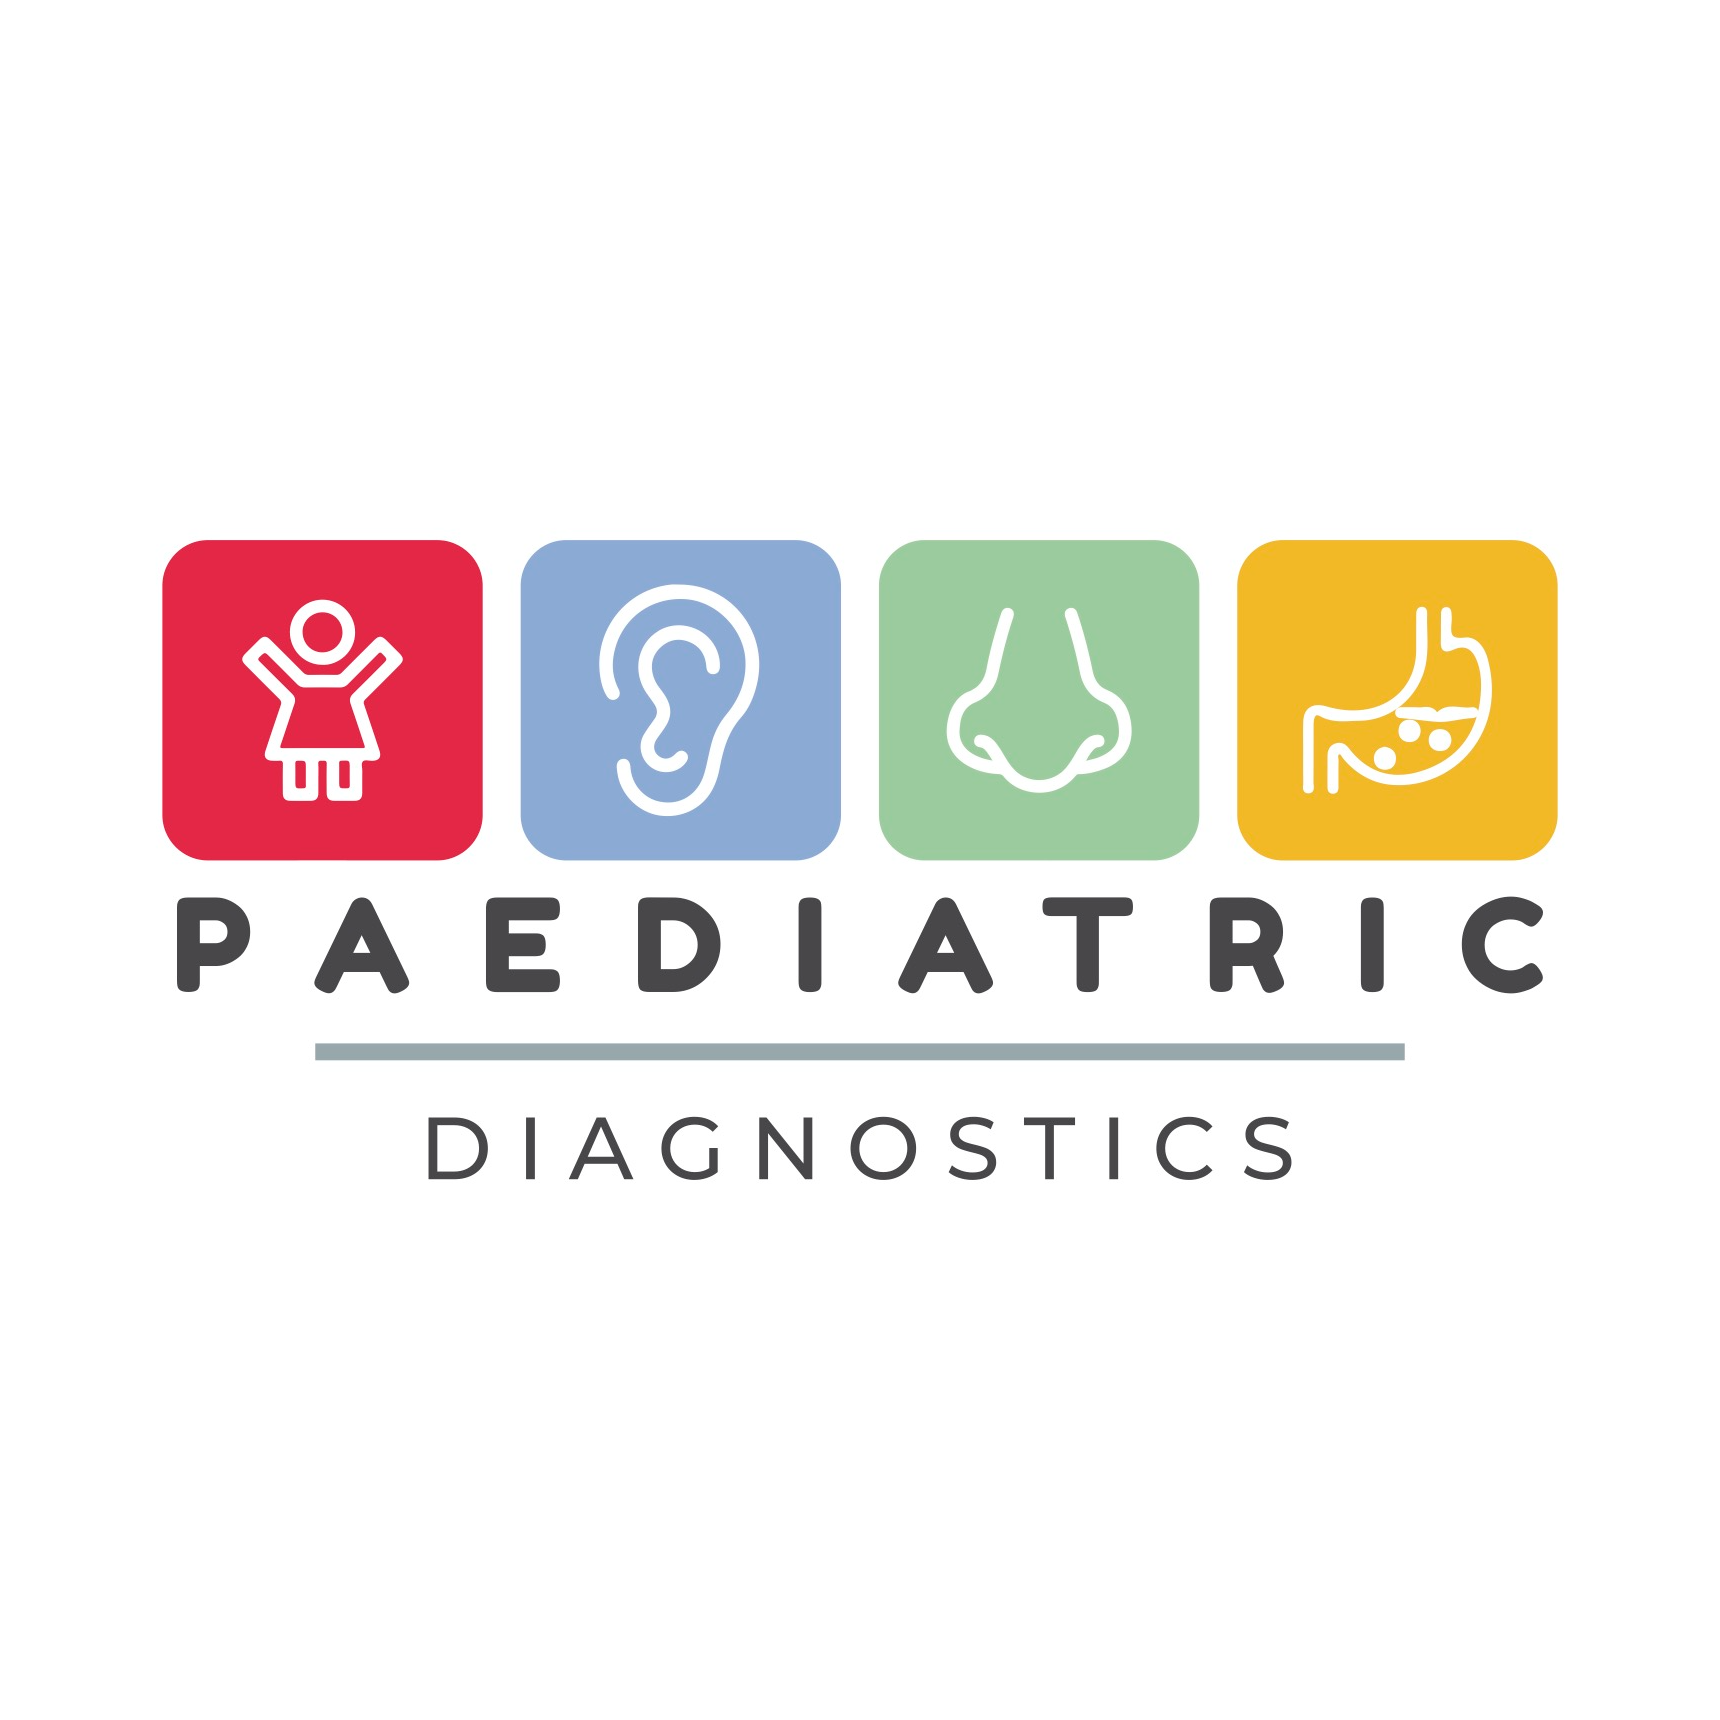 Paediatric Diagnostics